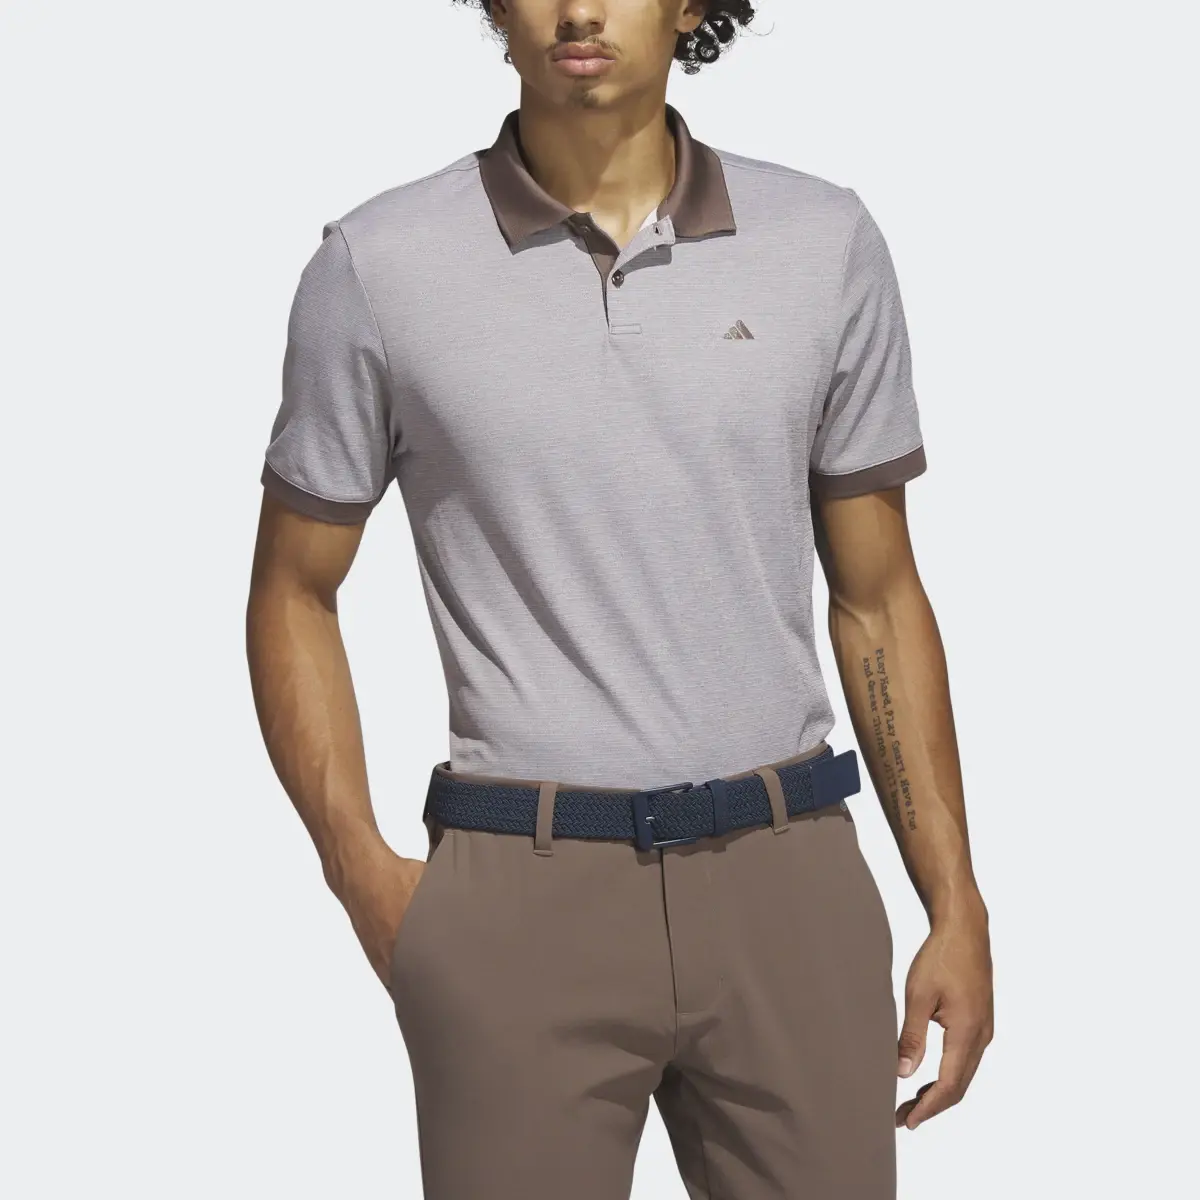 Adidas Ultimate365 No-Show Golf Polo Shirt. 1